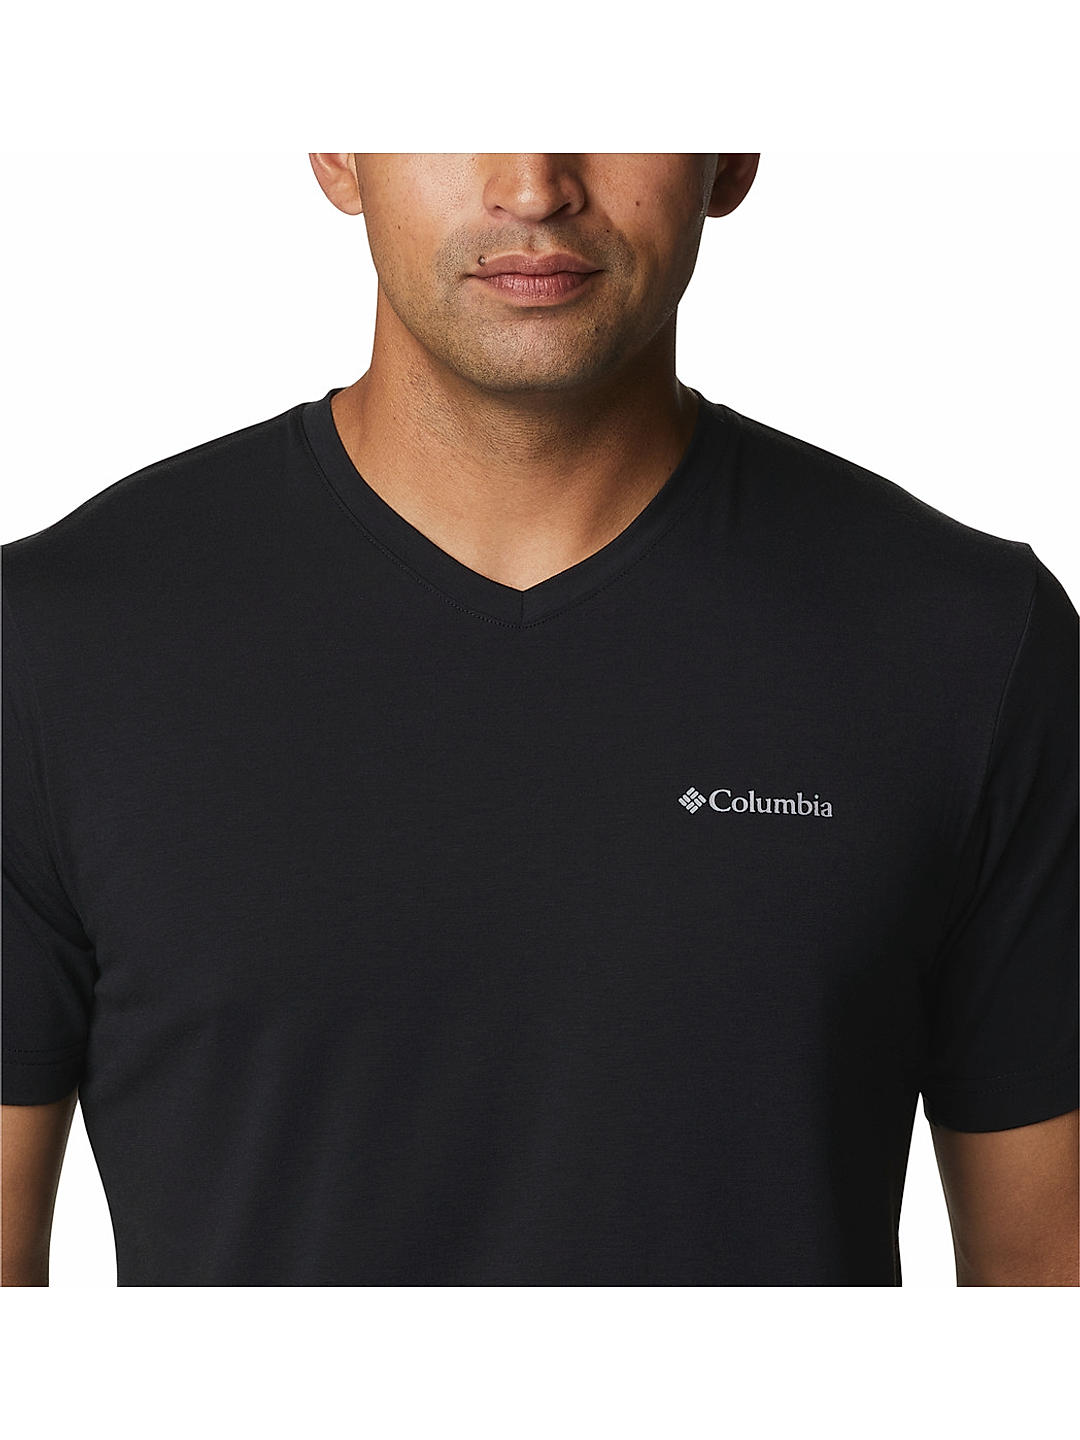 Making Gud kristen Buy Black Sun Trek V-Neck Short Sleeve for Men Online at Columbia  Sportswear | 480750